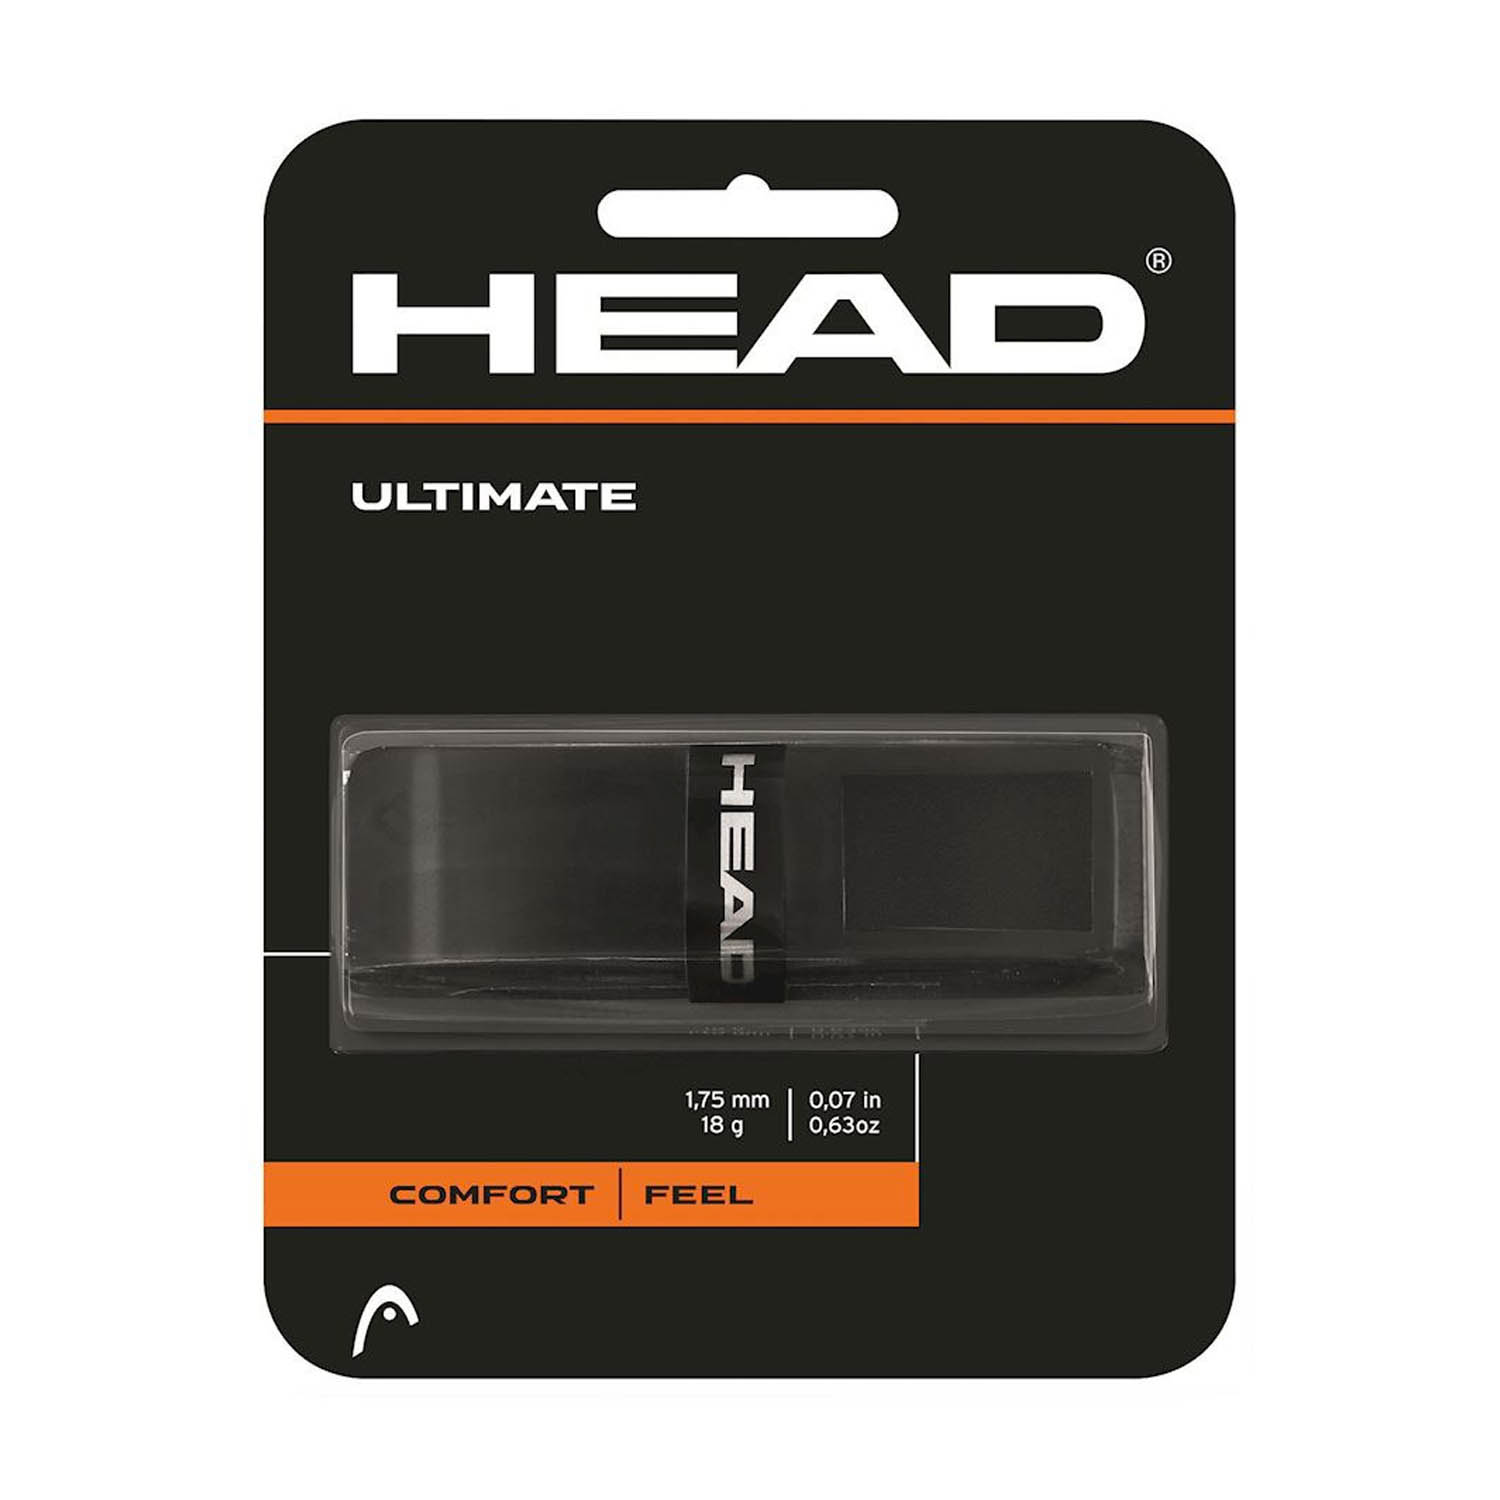 Head Ultimate Grip - Black